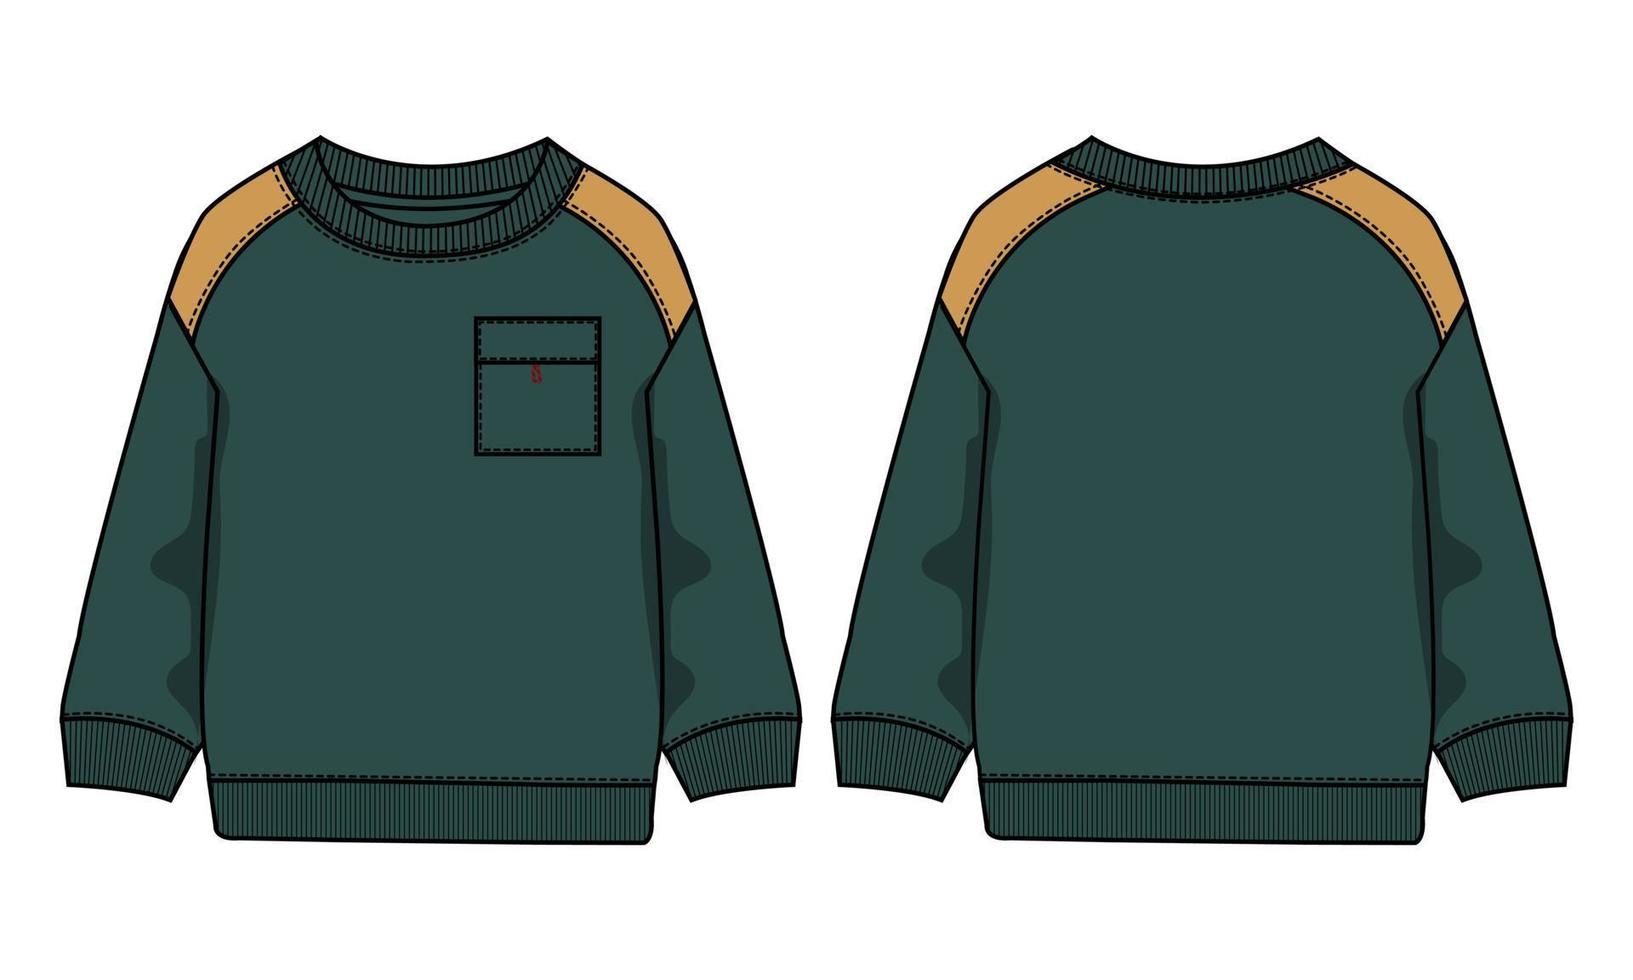 Langarm-Sweatshirt mit Tasche technische Mode flache Skizze Vektor-Illustration grüne Farbvorlage Vorder- und Rückansichten isoliert auf weißem Hintergrund. vektor